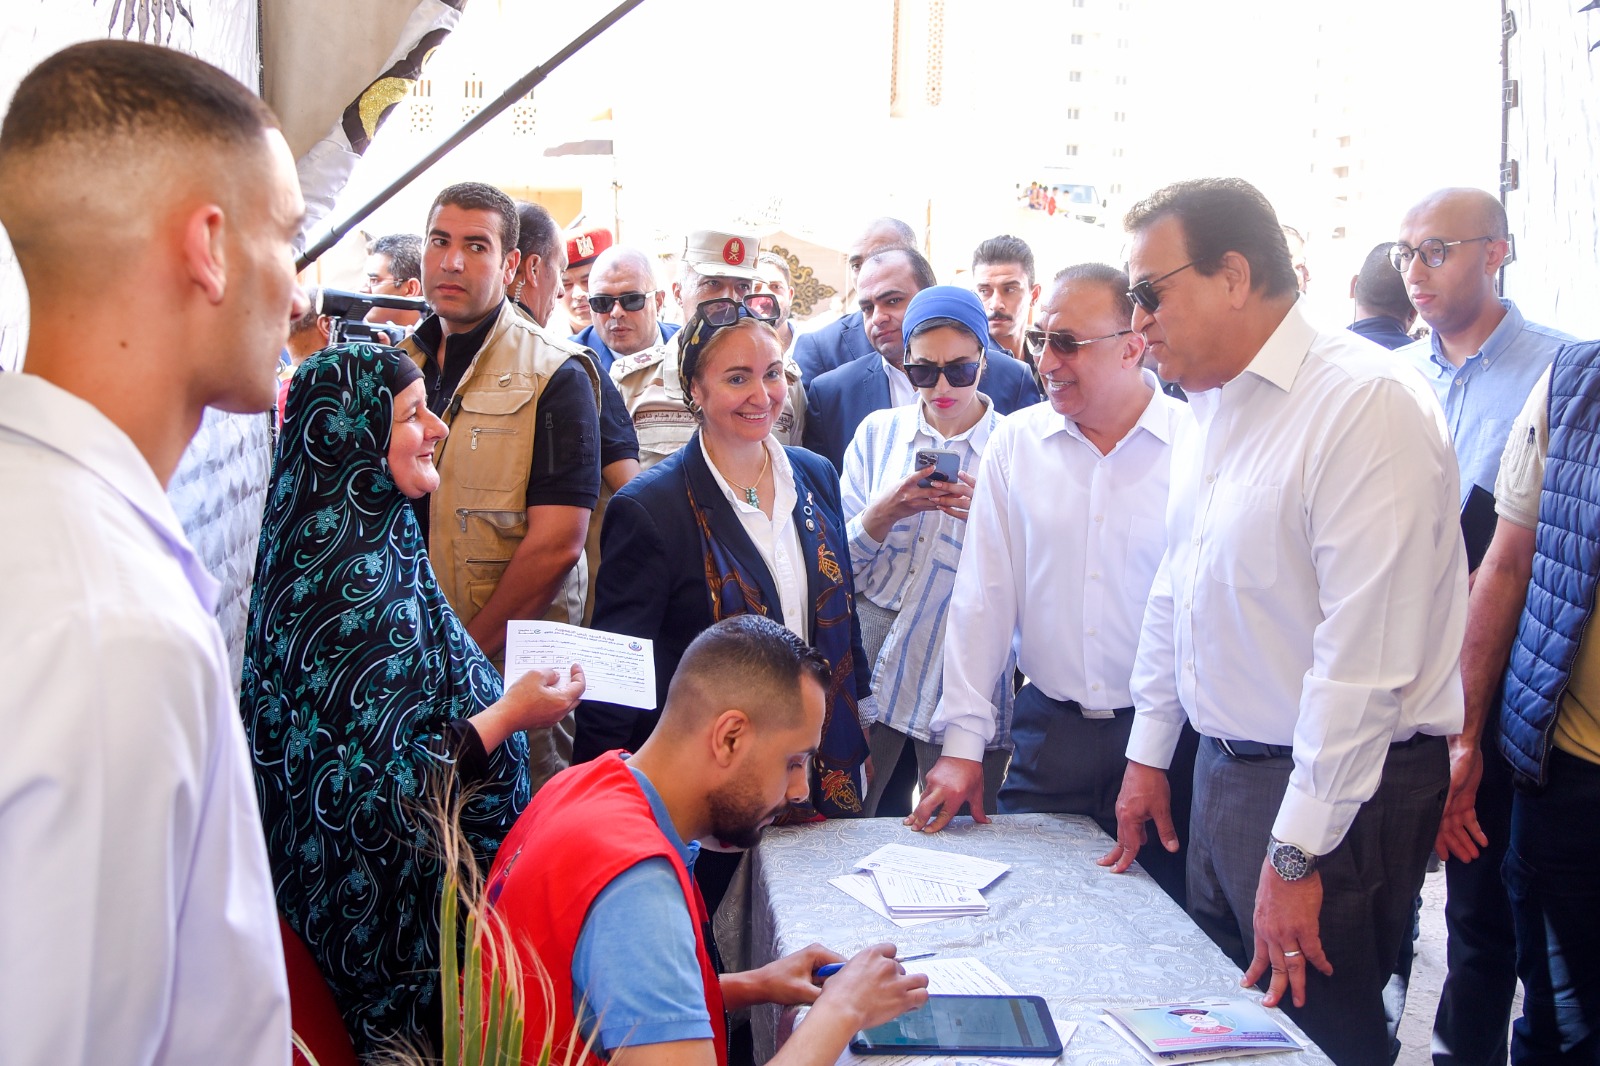 وزير الصحة ومحافظ الإسكندرية يتفقدان مقرات حملة ١٠٠ يوم صحة للوقوف علي مؤشرات عمل المبادرة 3